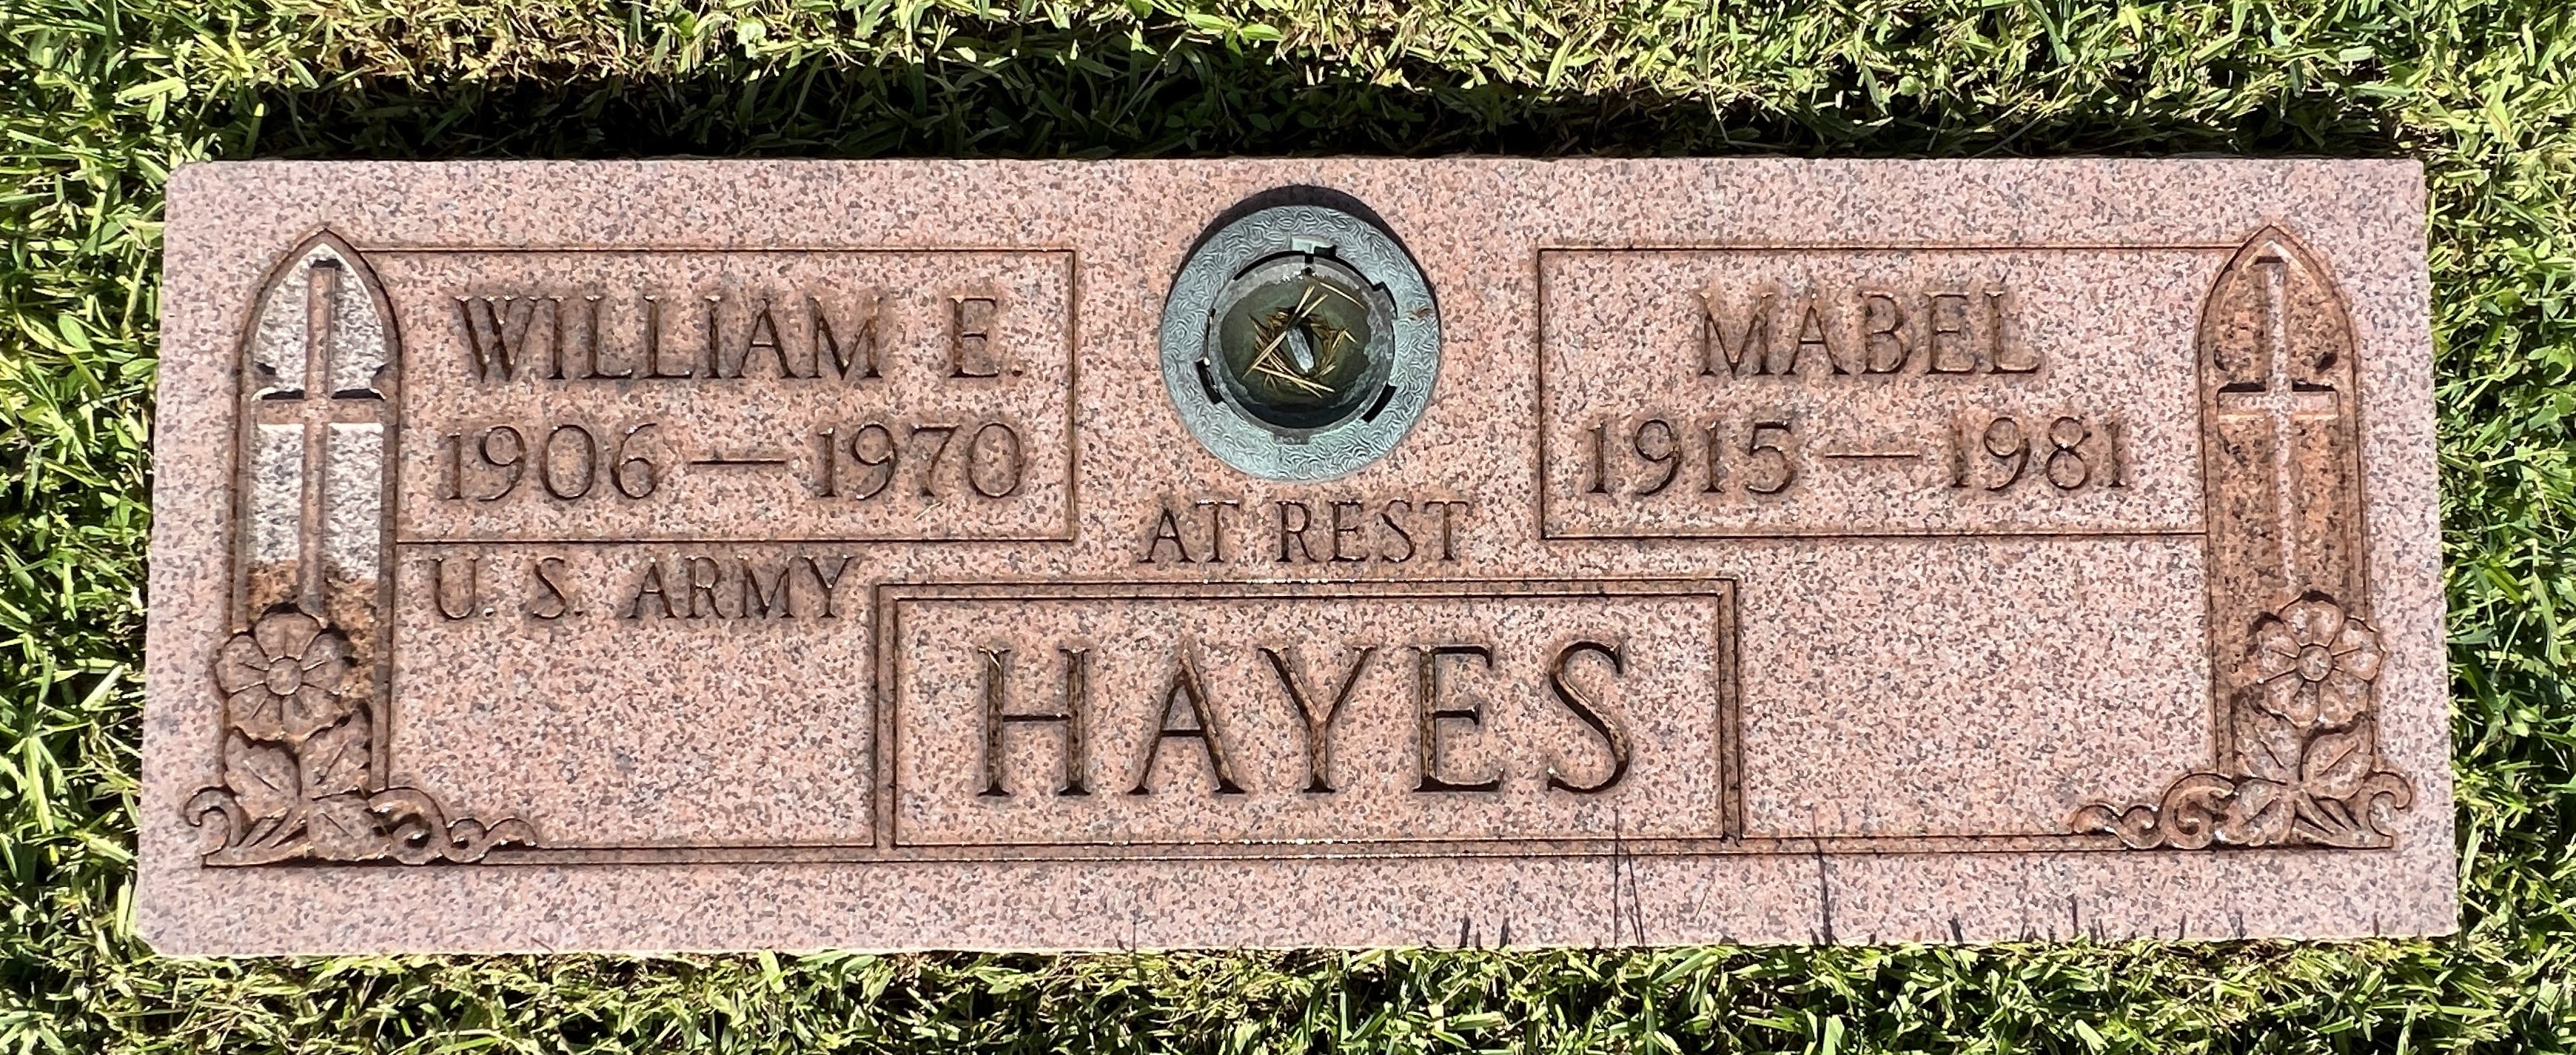 William E Hayes